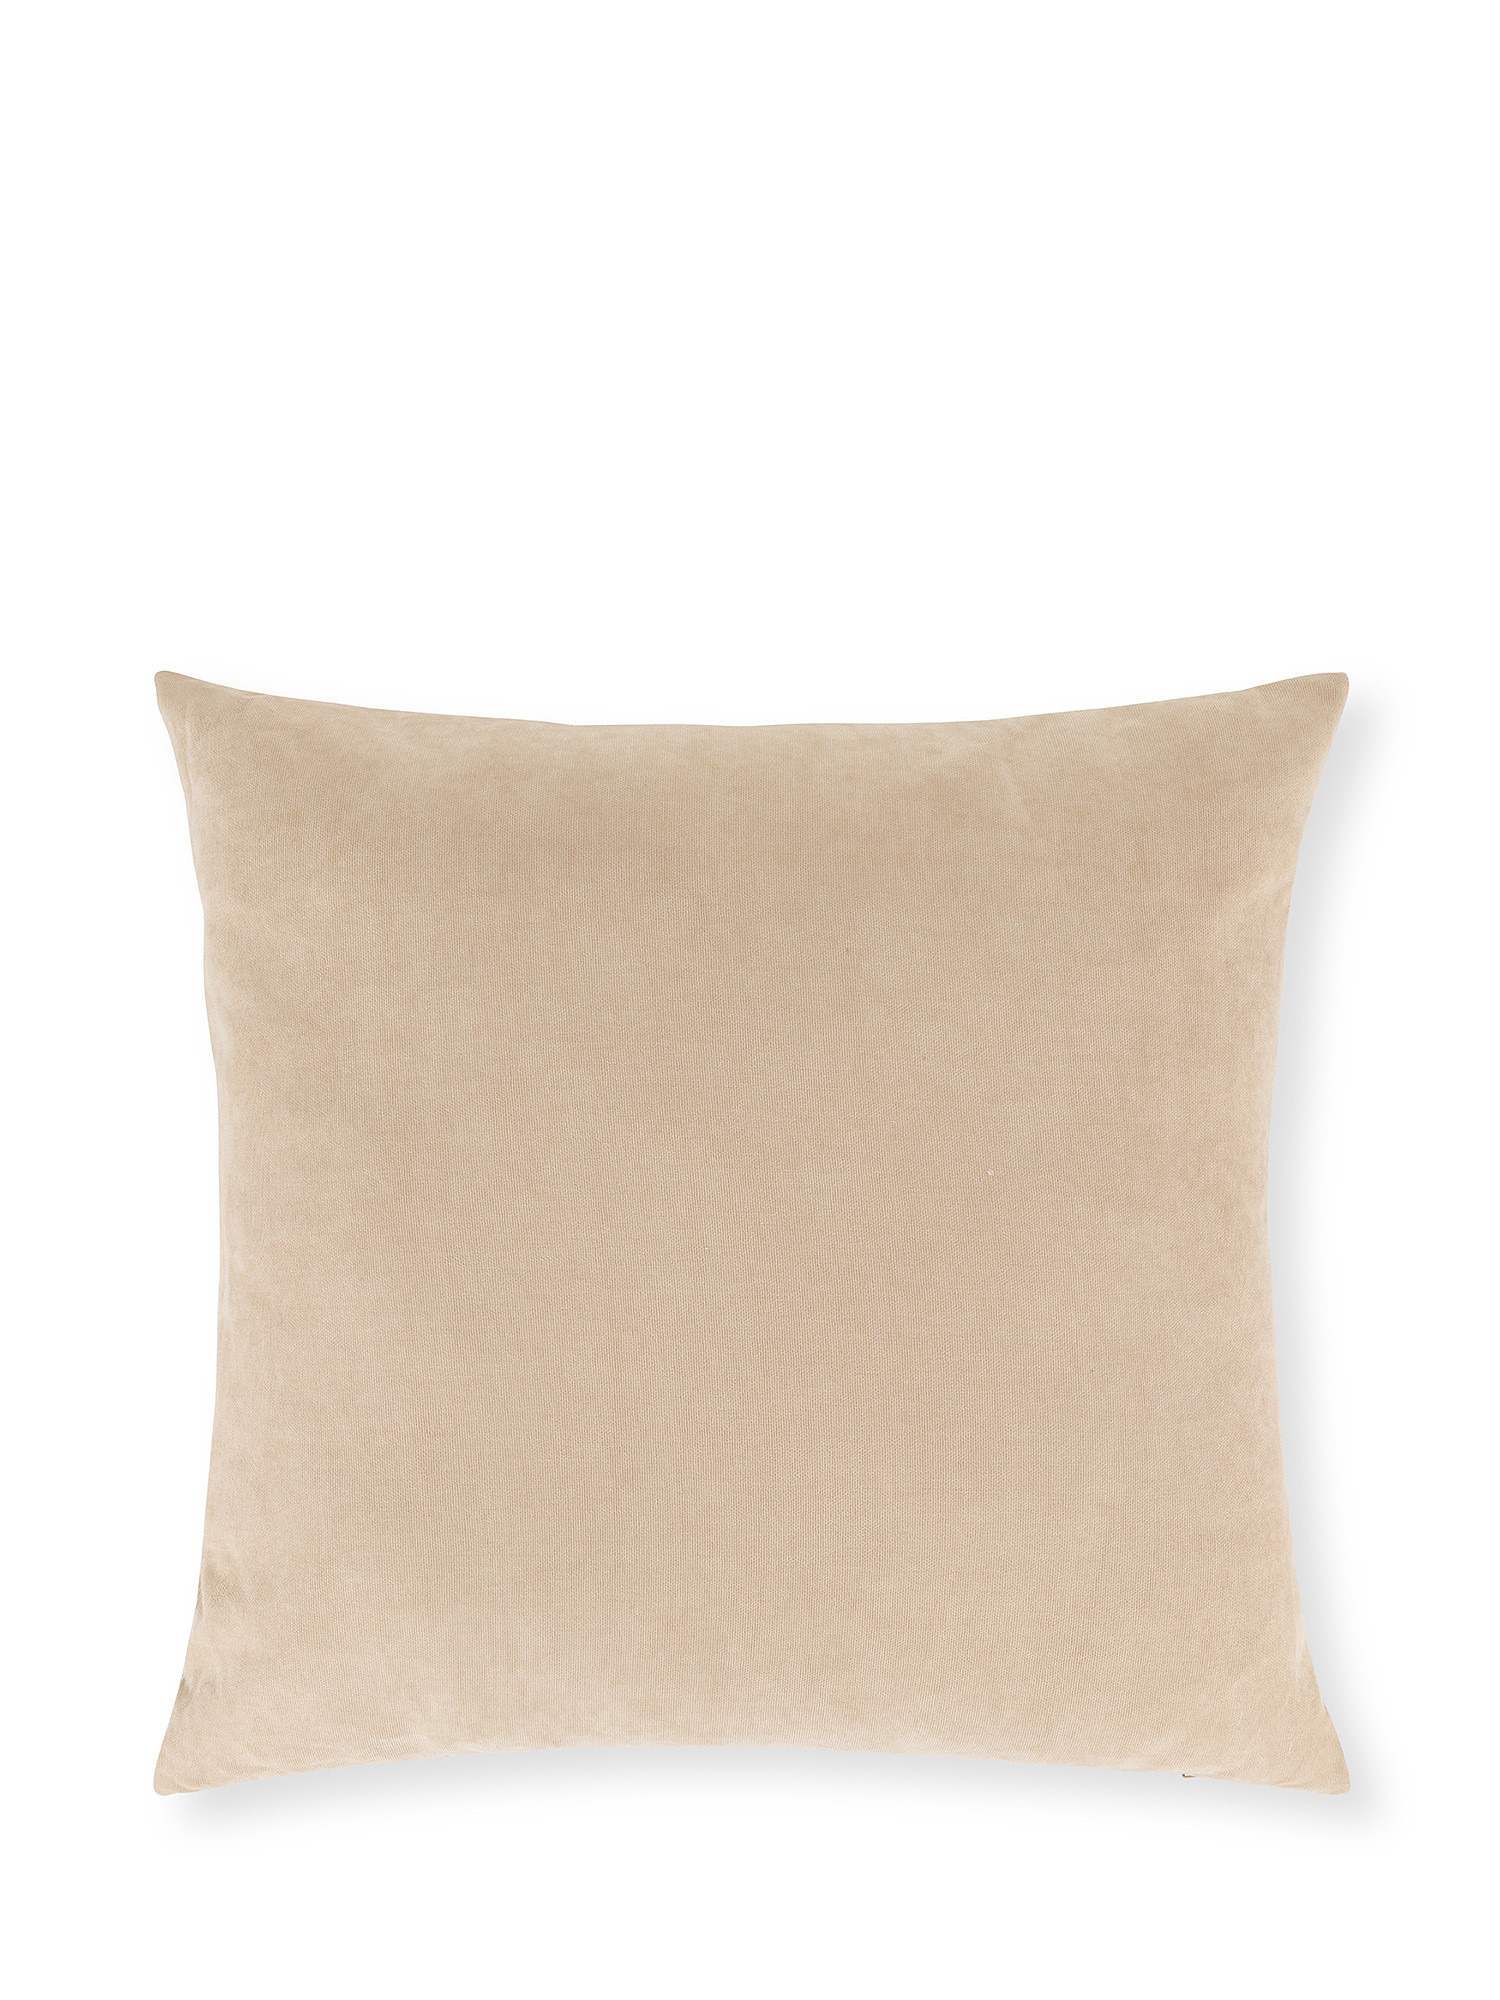 Embossed jacquard linen blend cushion 50x40cm, Beige, large image number 1